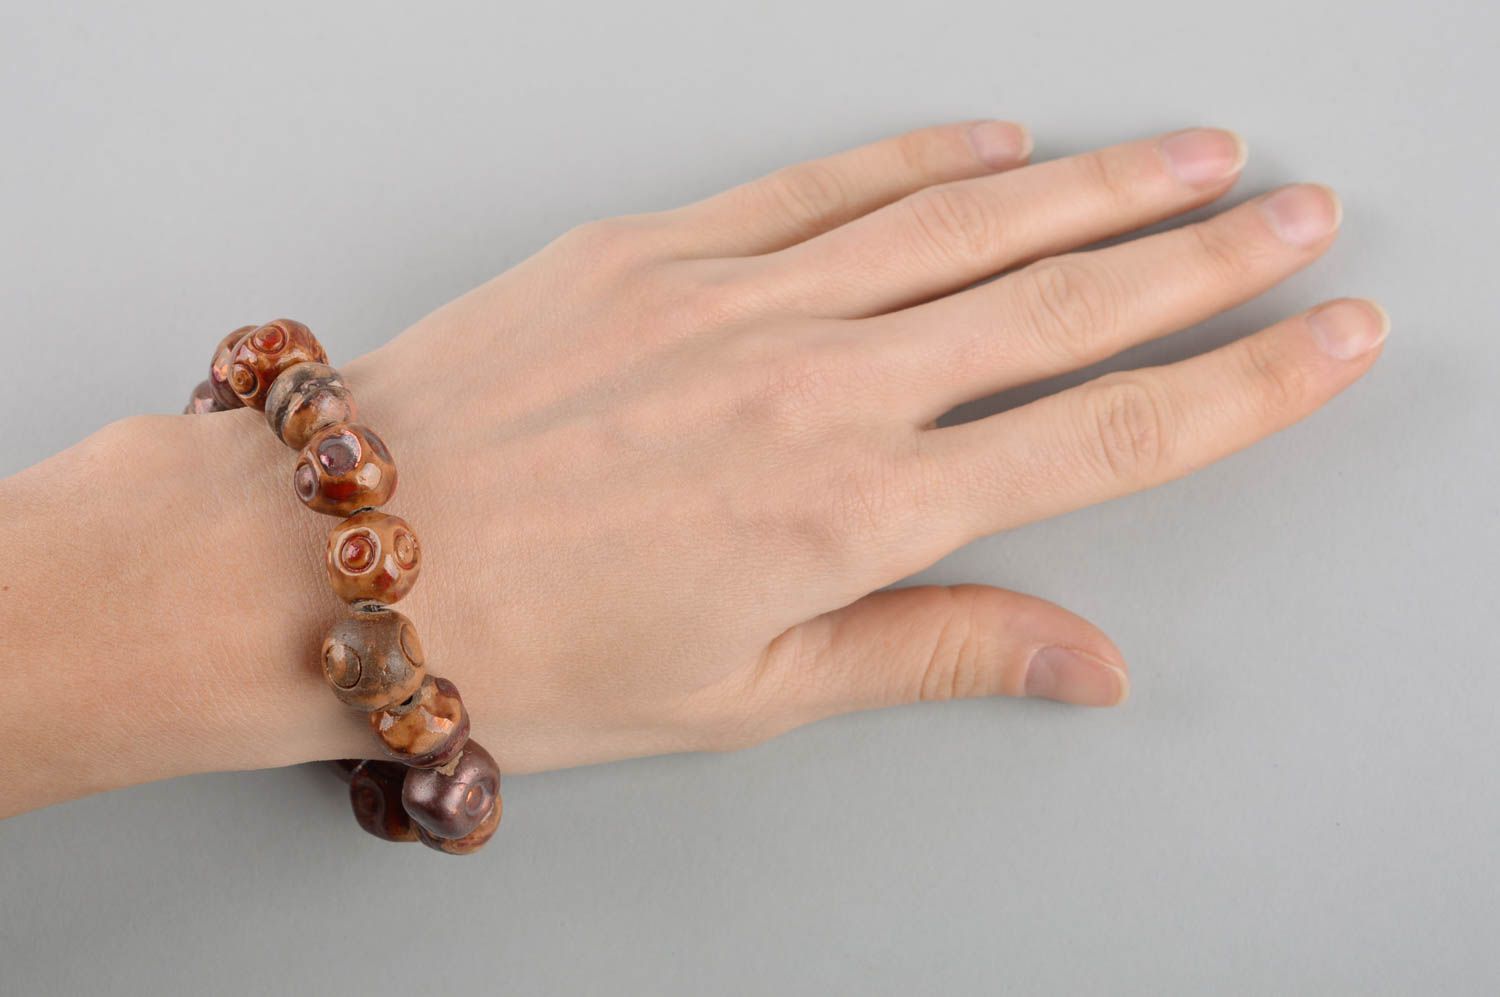 Handmade ceramic bracelet pottery works bead bracelet trendy jewelry ideas photo 5